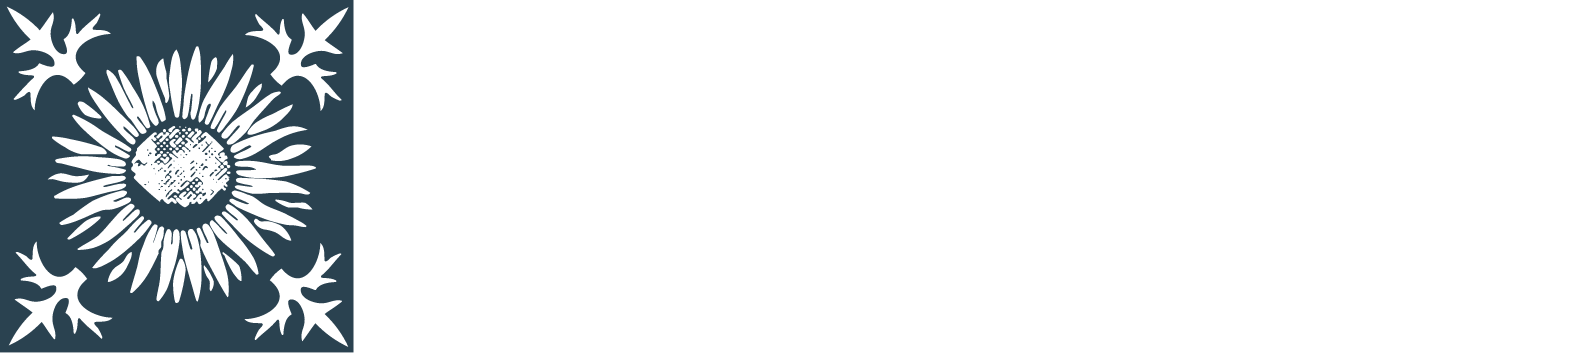 Rhön-Klinikum logo large for dark backgrounds (transparent PNG)